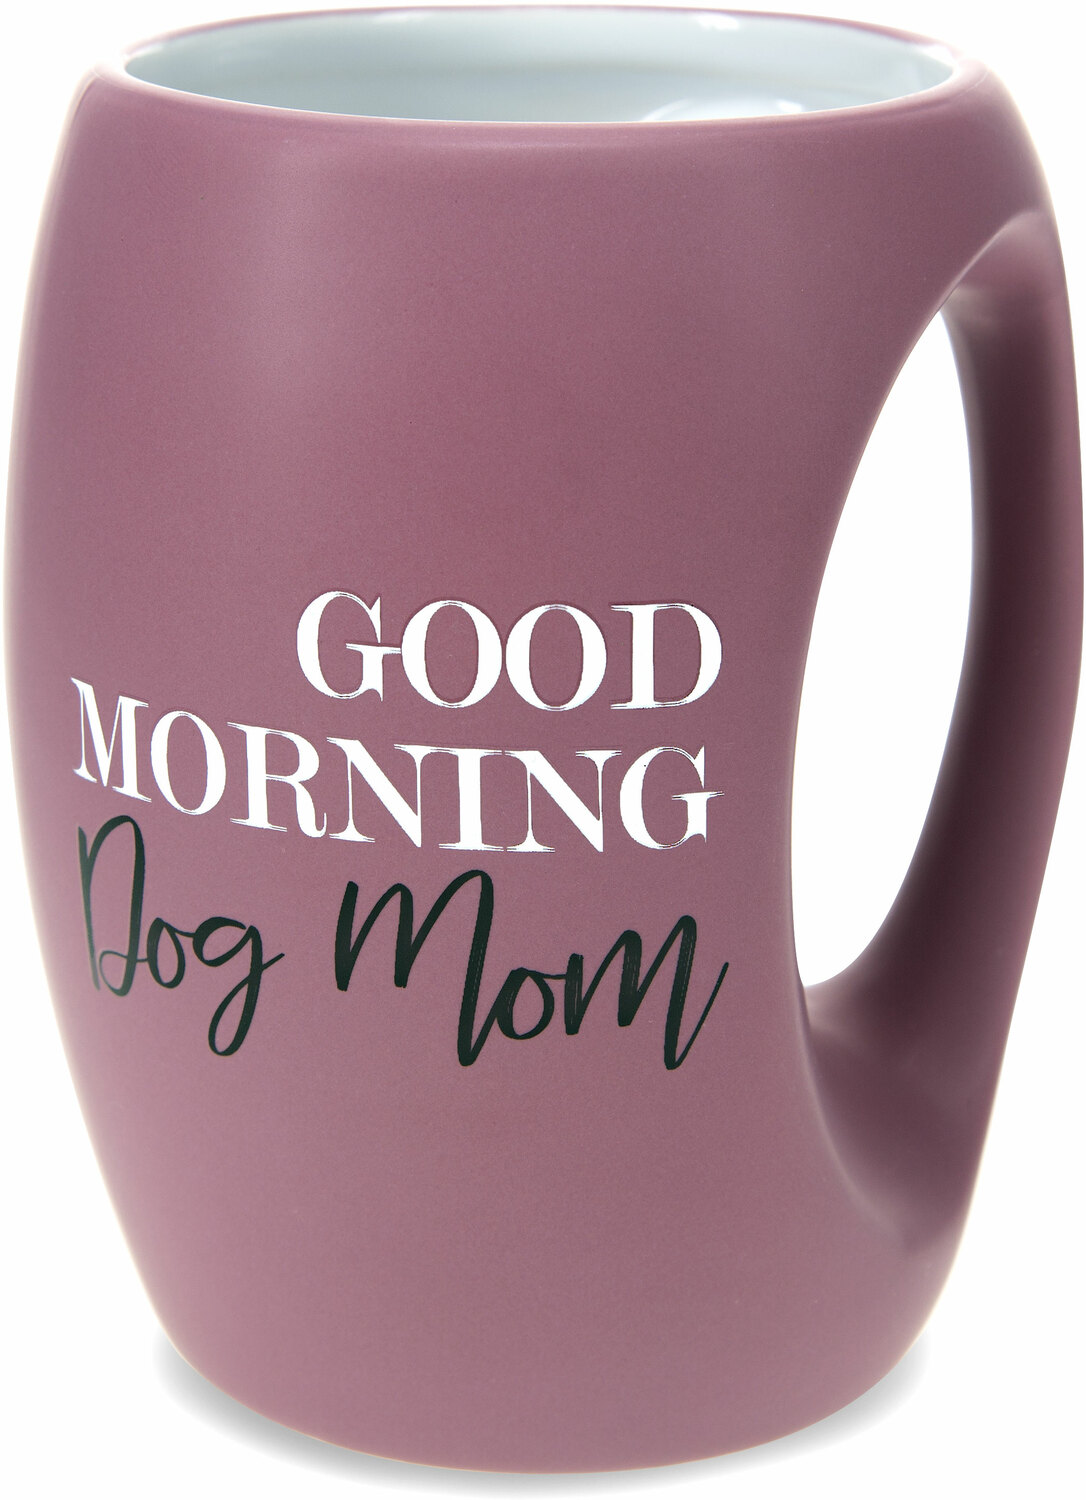 Dog Mom by Good Morning - Dog Mom - 16 oz Mug